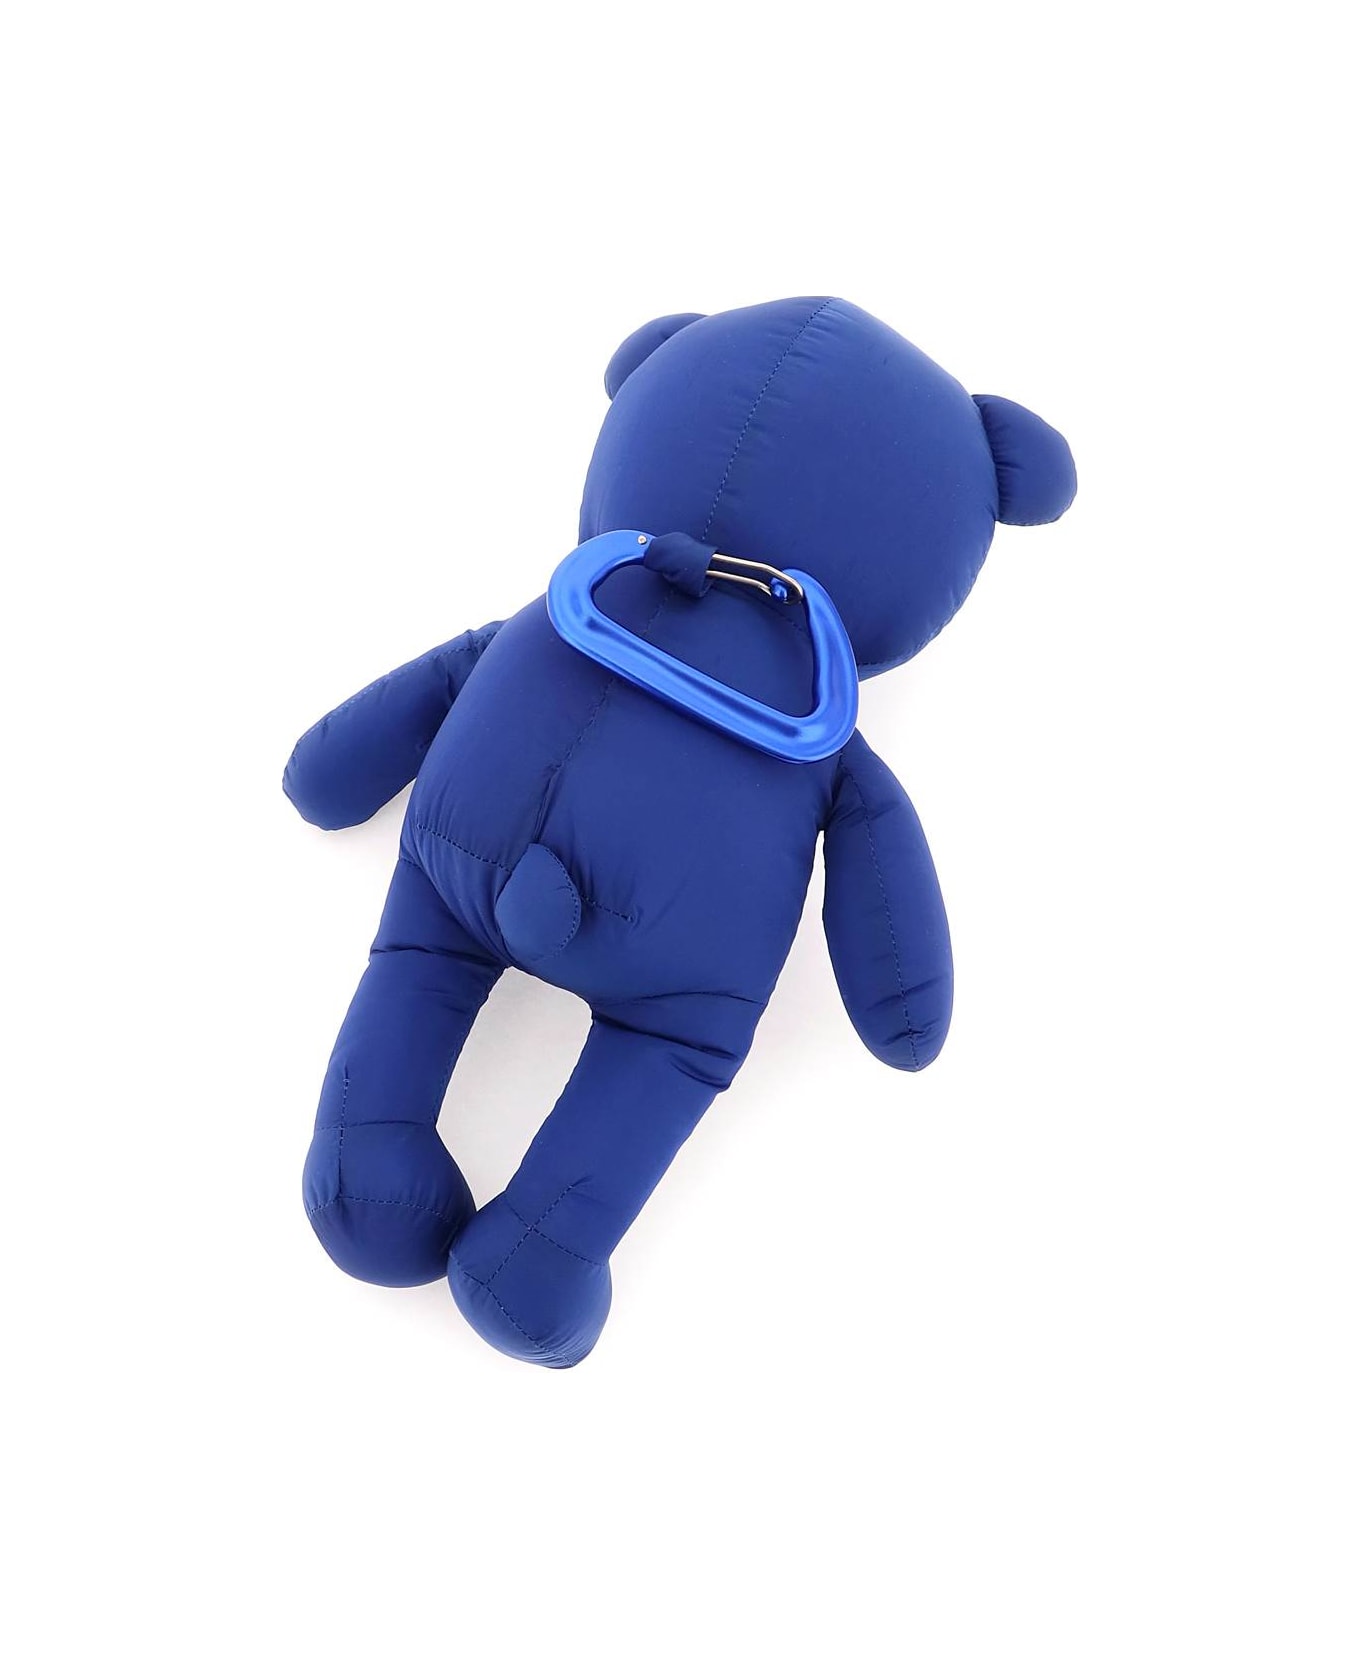 Dsquared2 Teddy Bear Keychain - BLU (Blue) キーリング